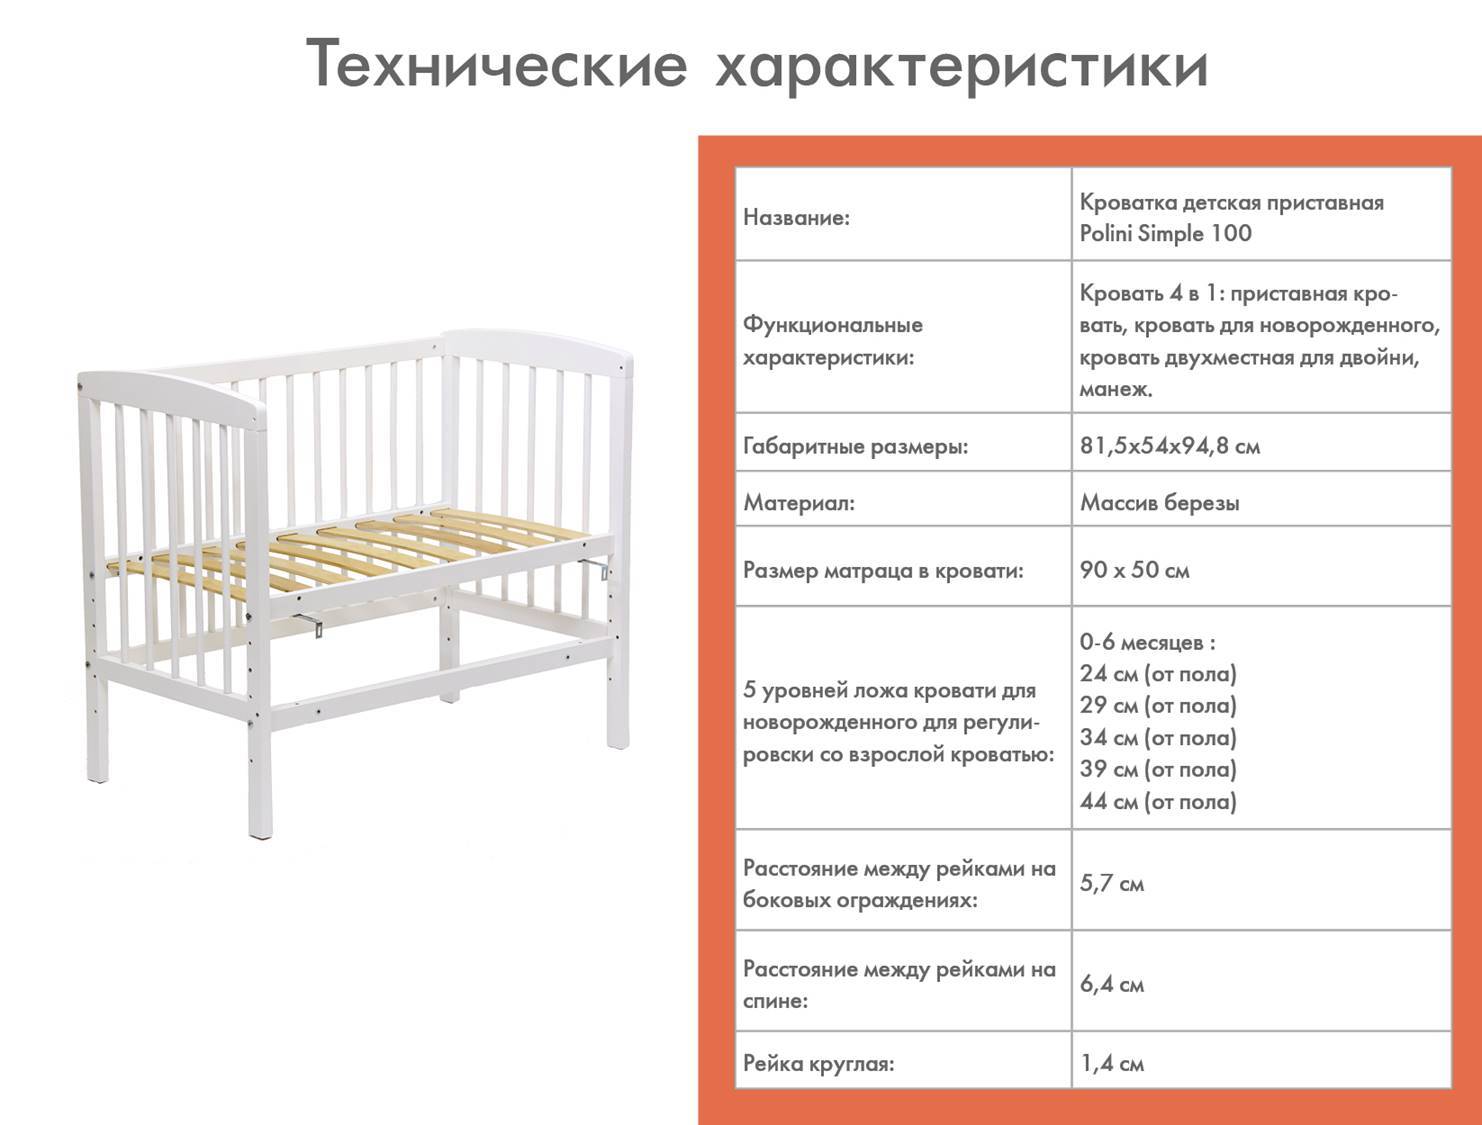 Детская кровать: конструкции, чертежи, требования - одноэтажная и двуэтажная